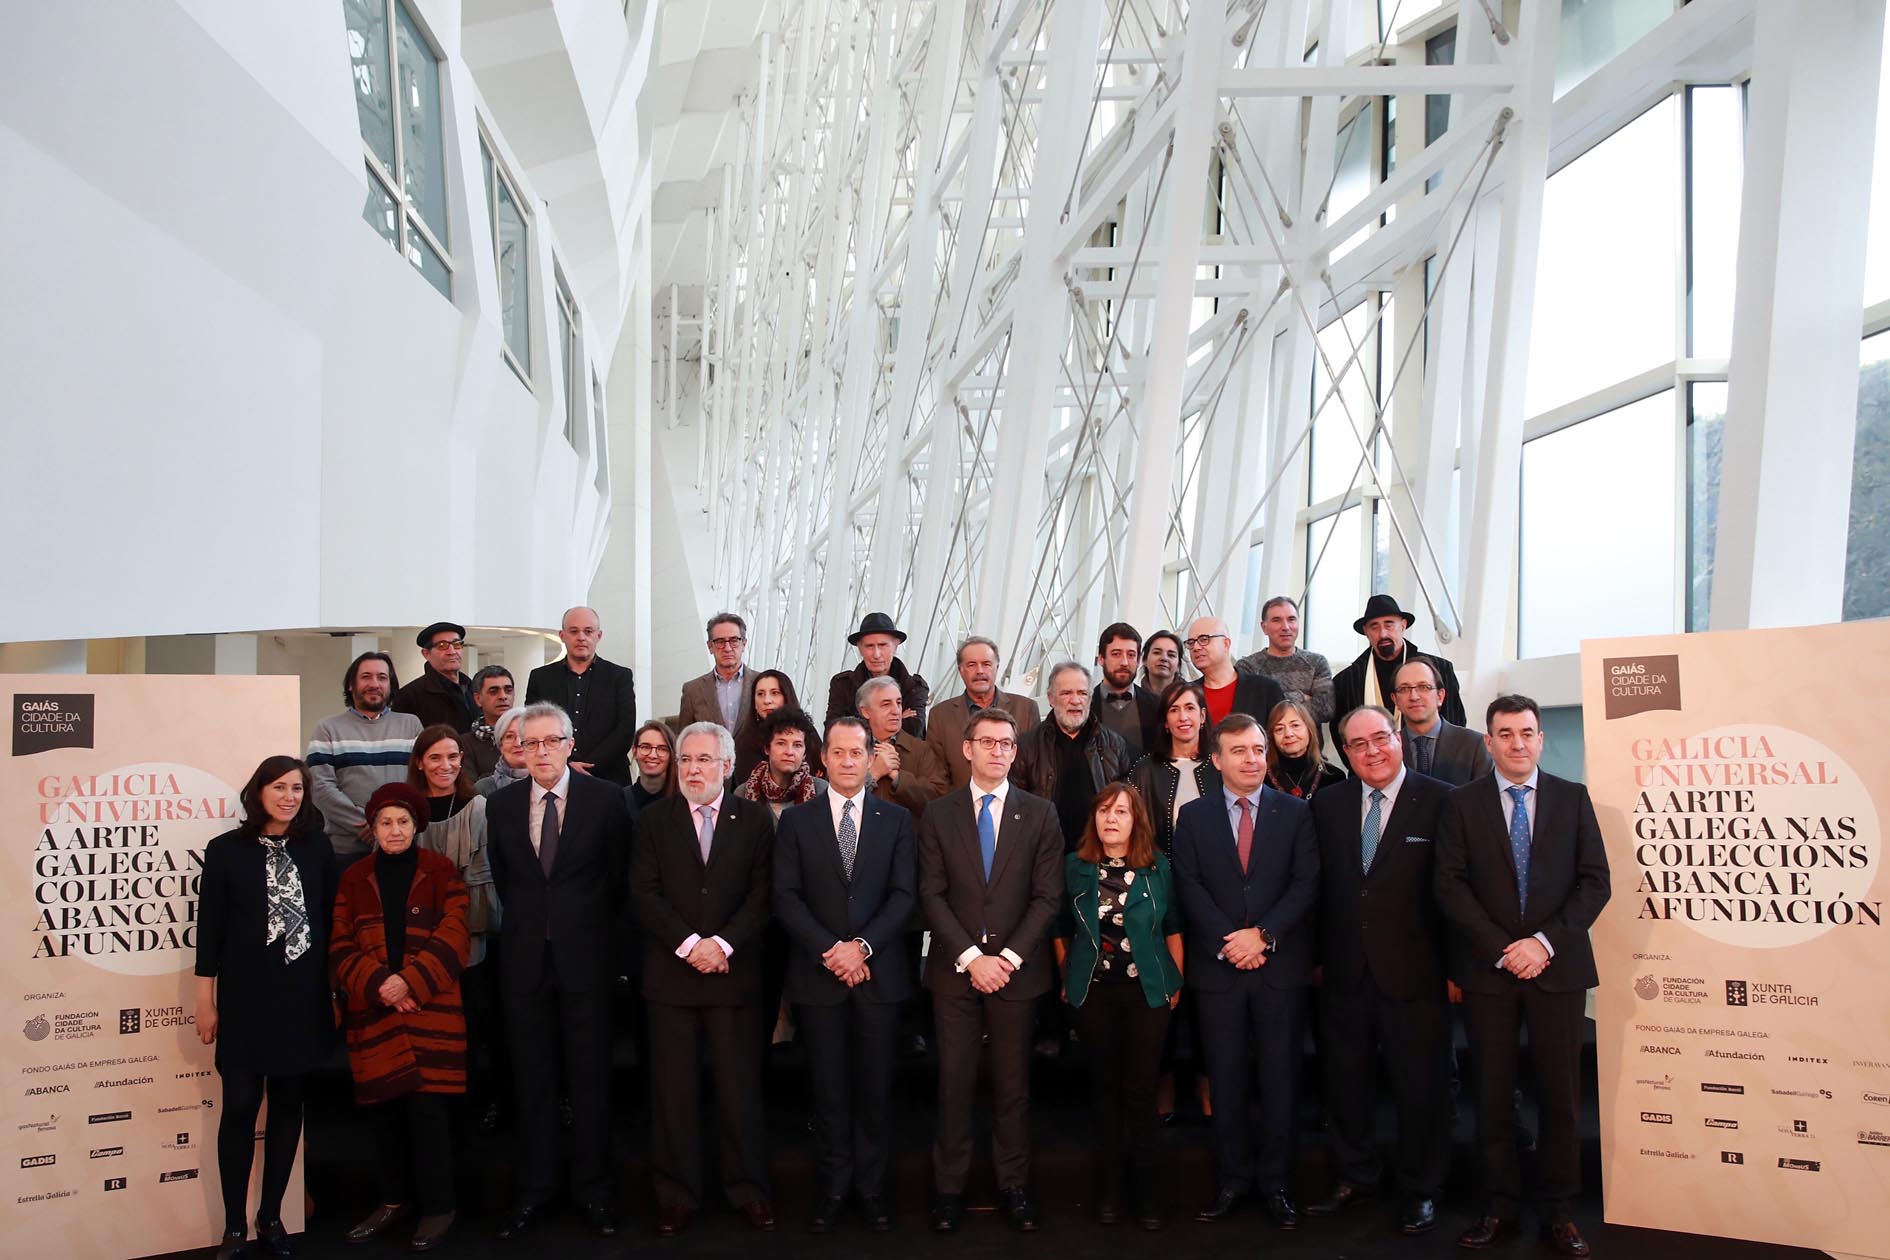 Foto da noticia:O presidente do Parlamento asiste á inauguración da exposición "Galicia universal. A arte galega nas coleccións Abanca e Afundación"